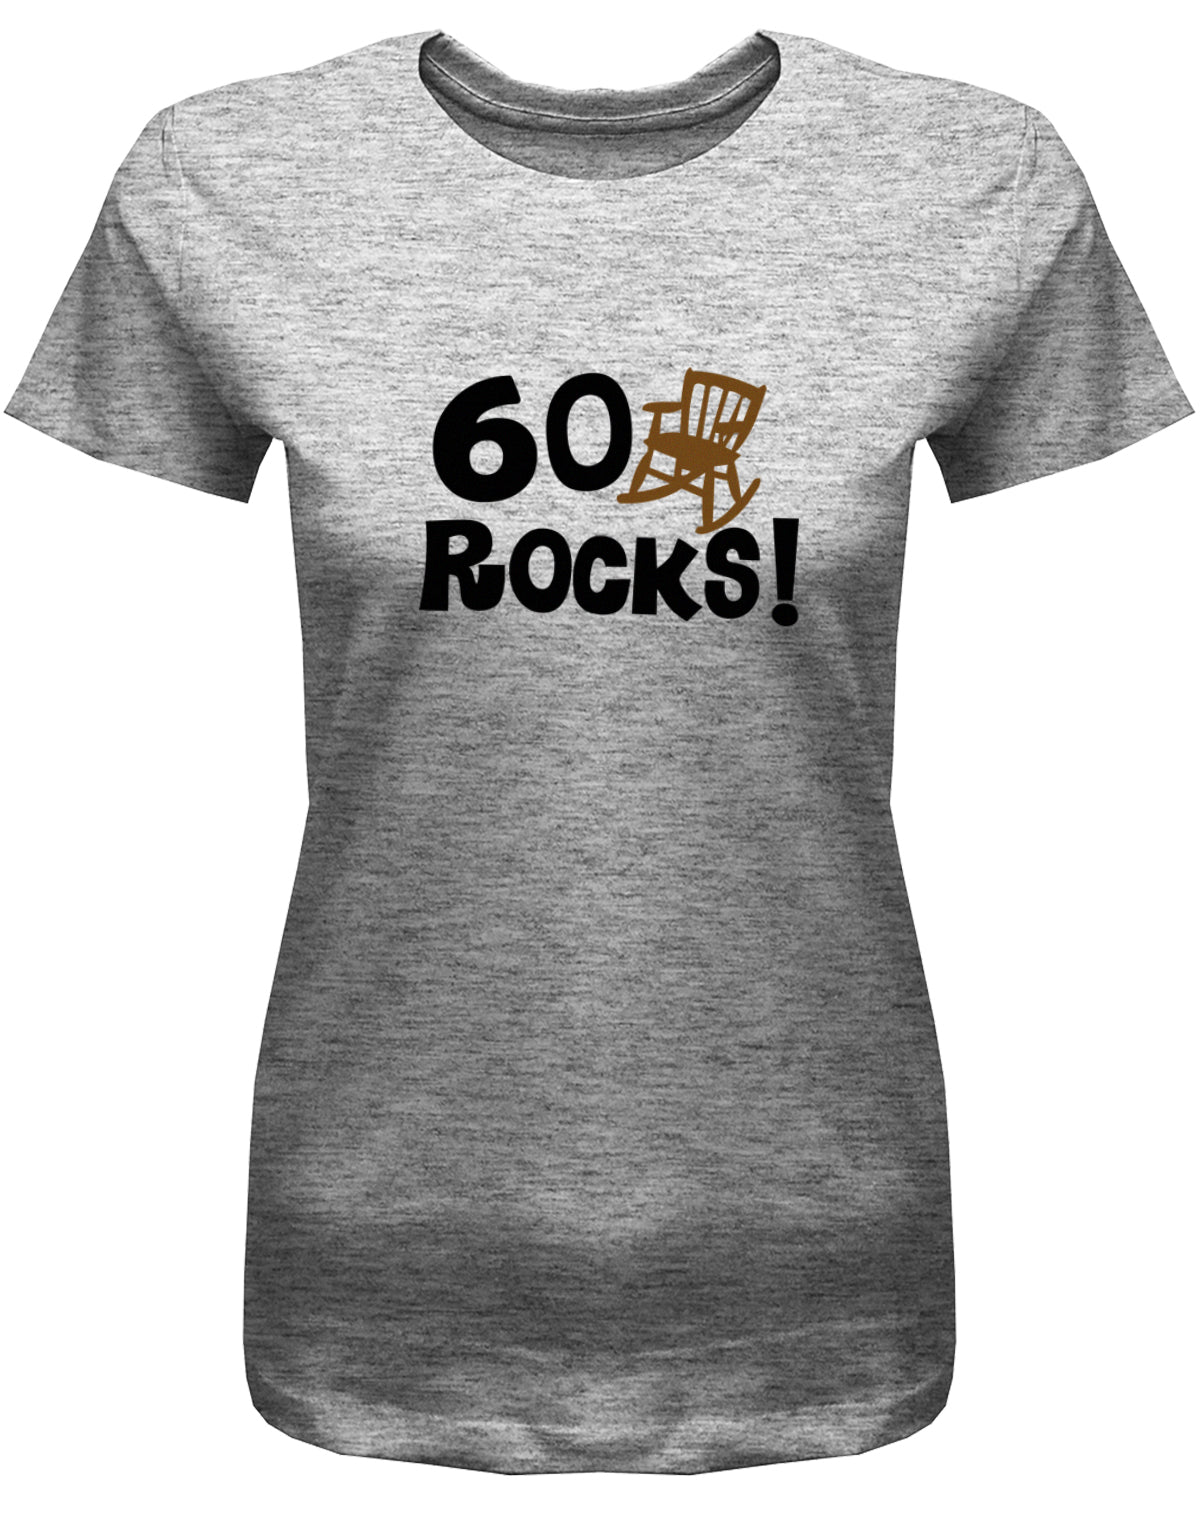 Lustiges T-Shirt zum 60 Geburtstag für die Frau Bedruckt mit 60 Rocks Schaukelstuhl. Grau